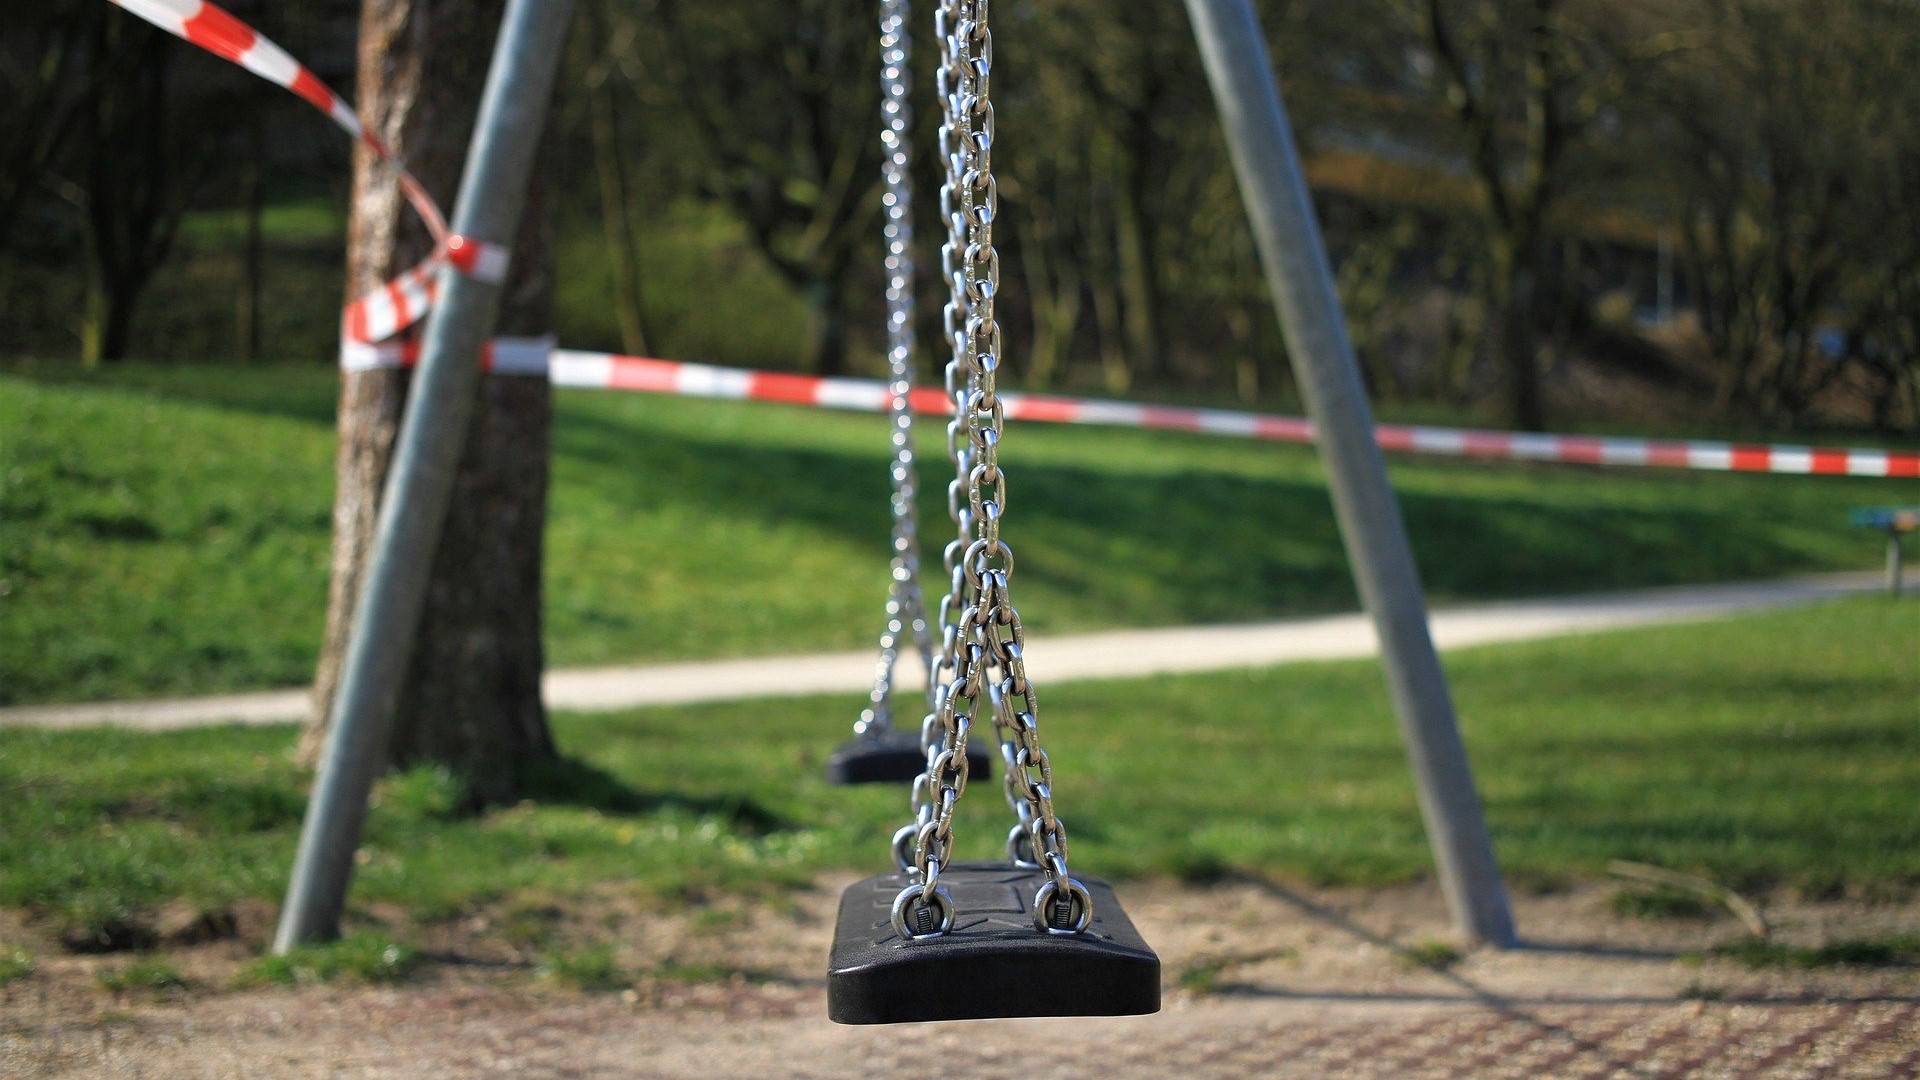 Eine Doppelschaukel auf einem Spielplatz mit rotweißem Flatterband abgesperrt und darf nicht benutzt werden.